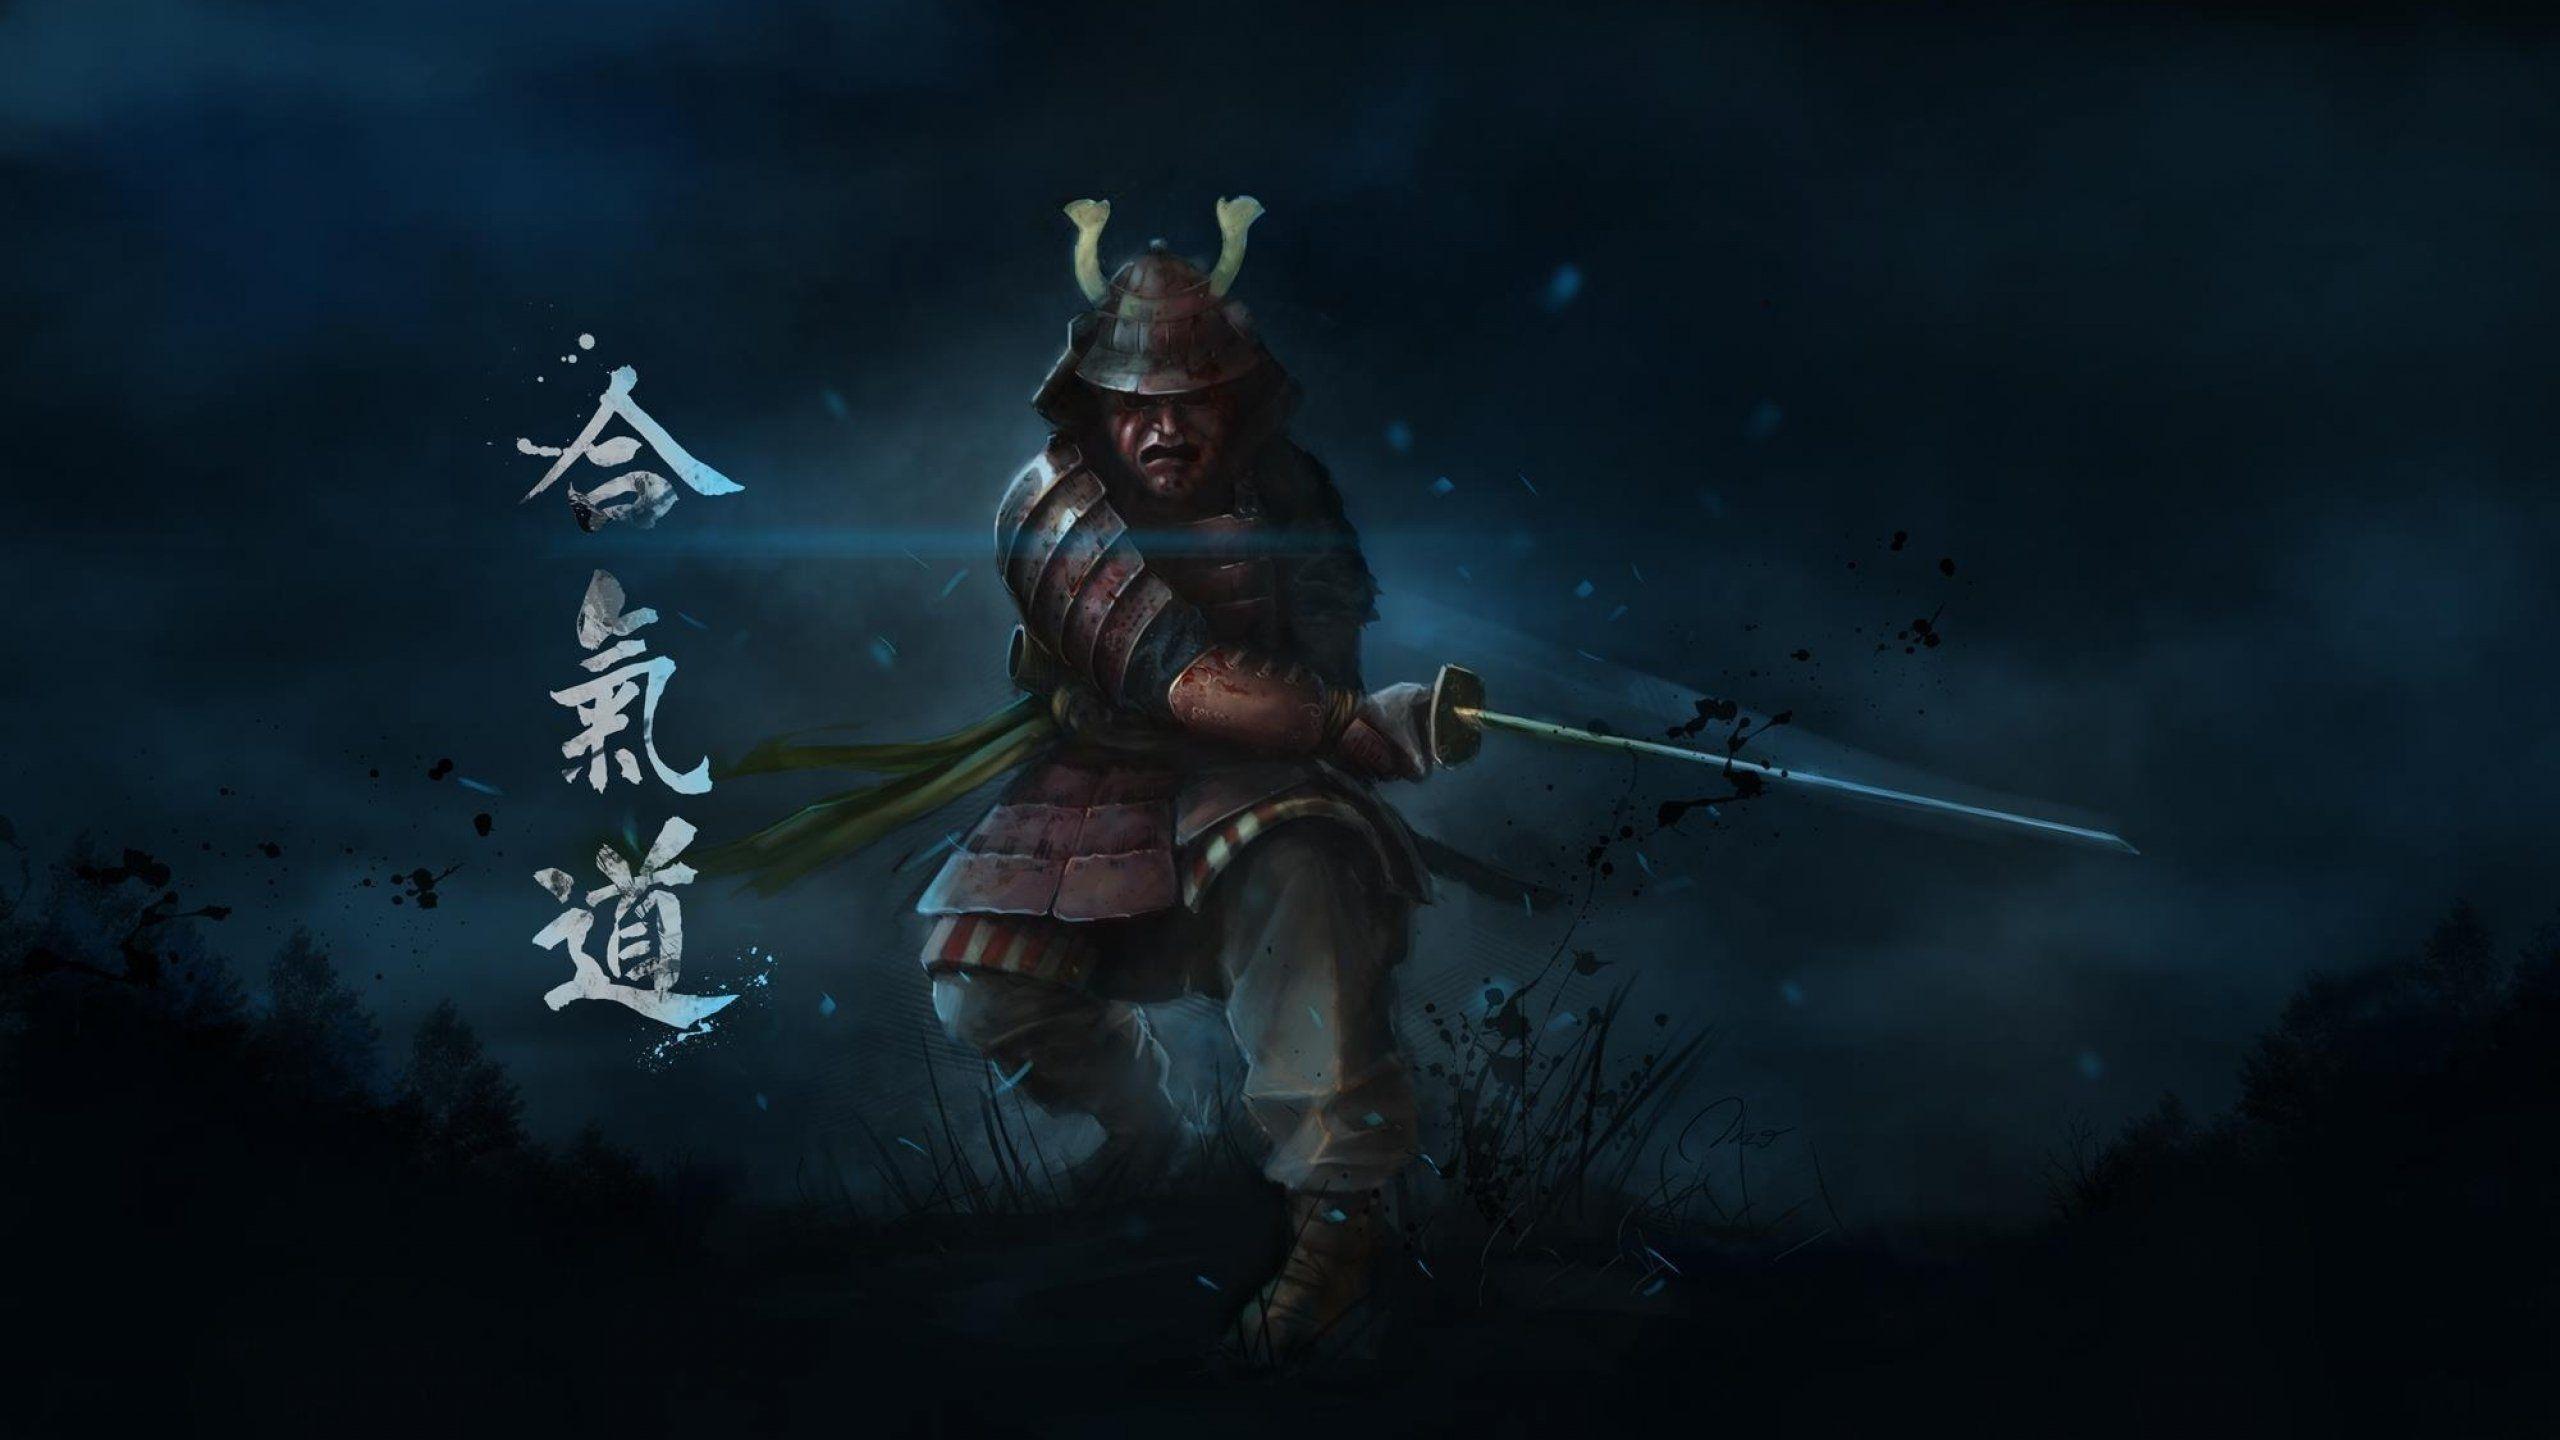 Samurai warrior fantasy art artwork asian wallpaper. Download